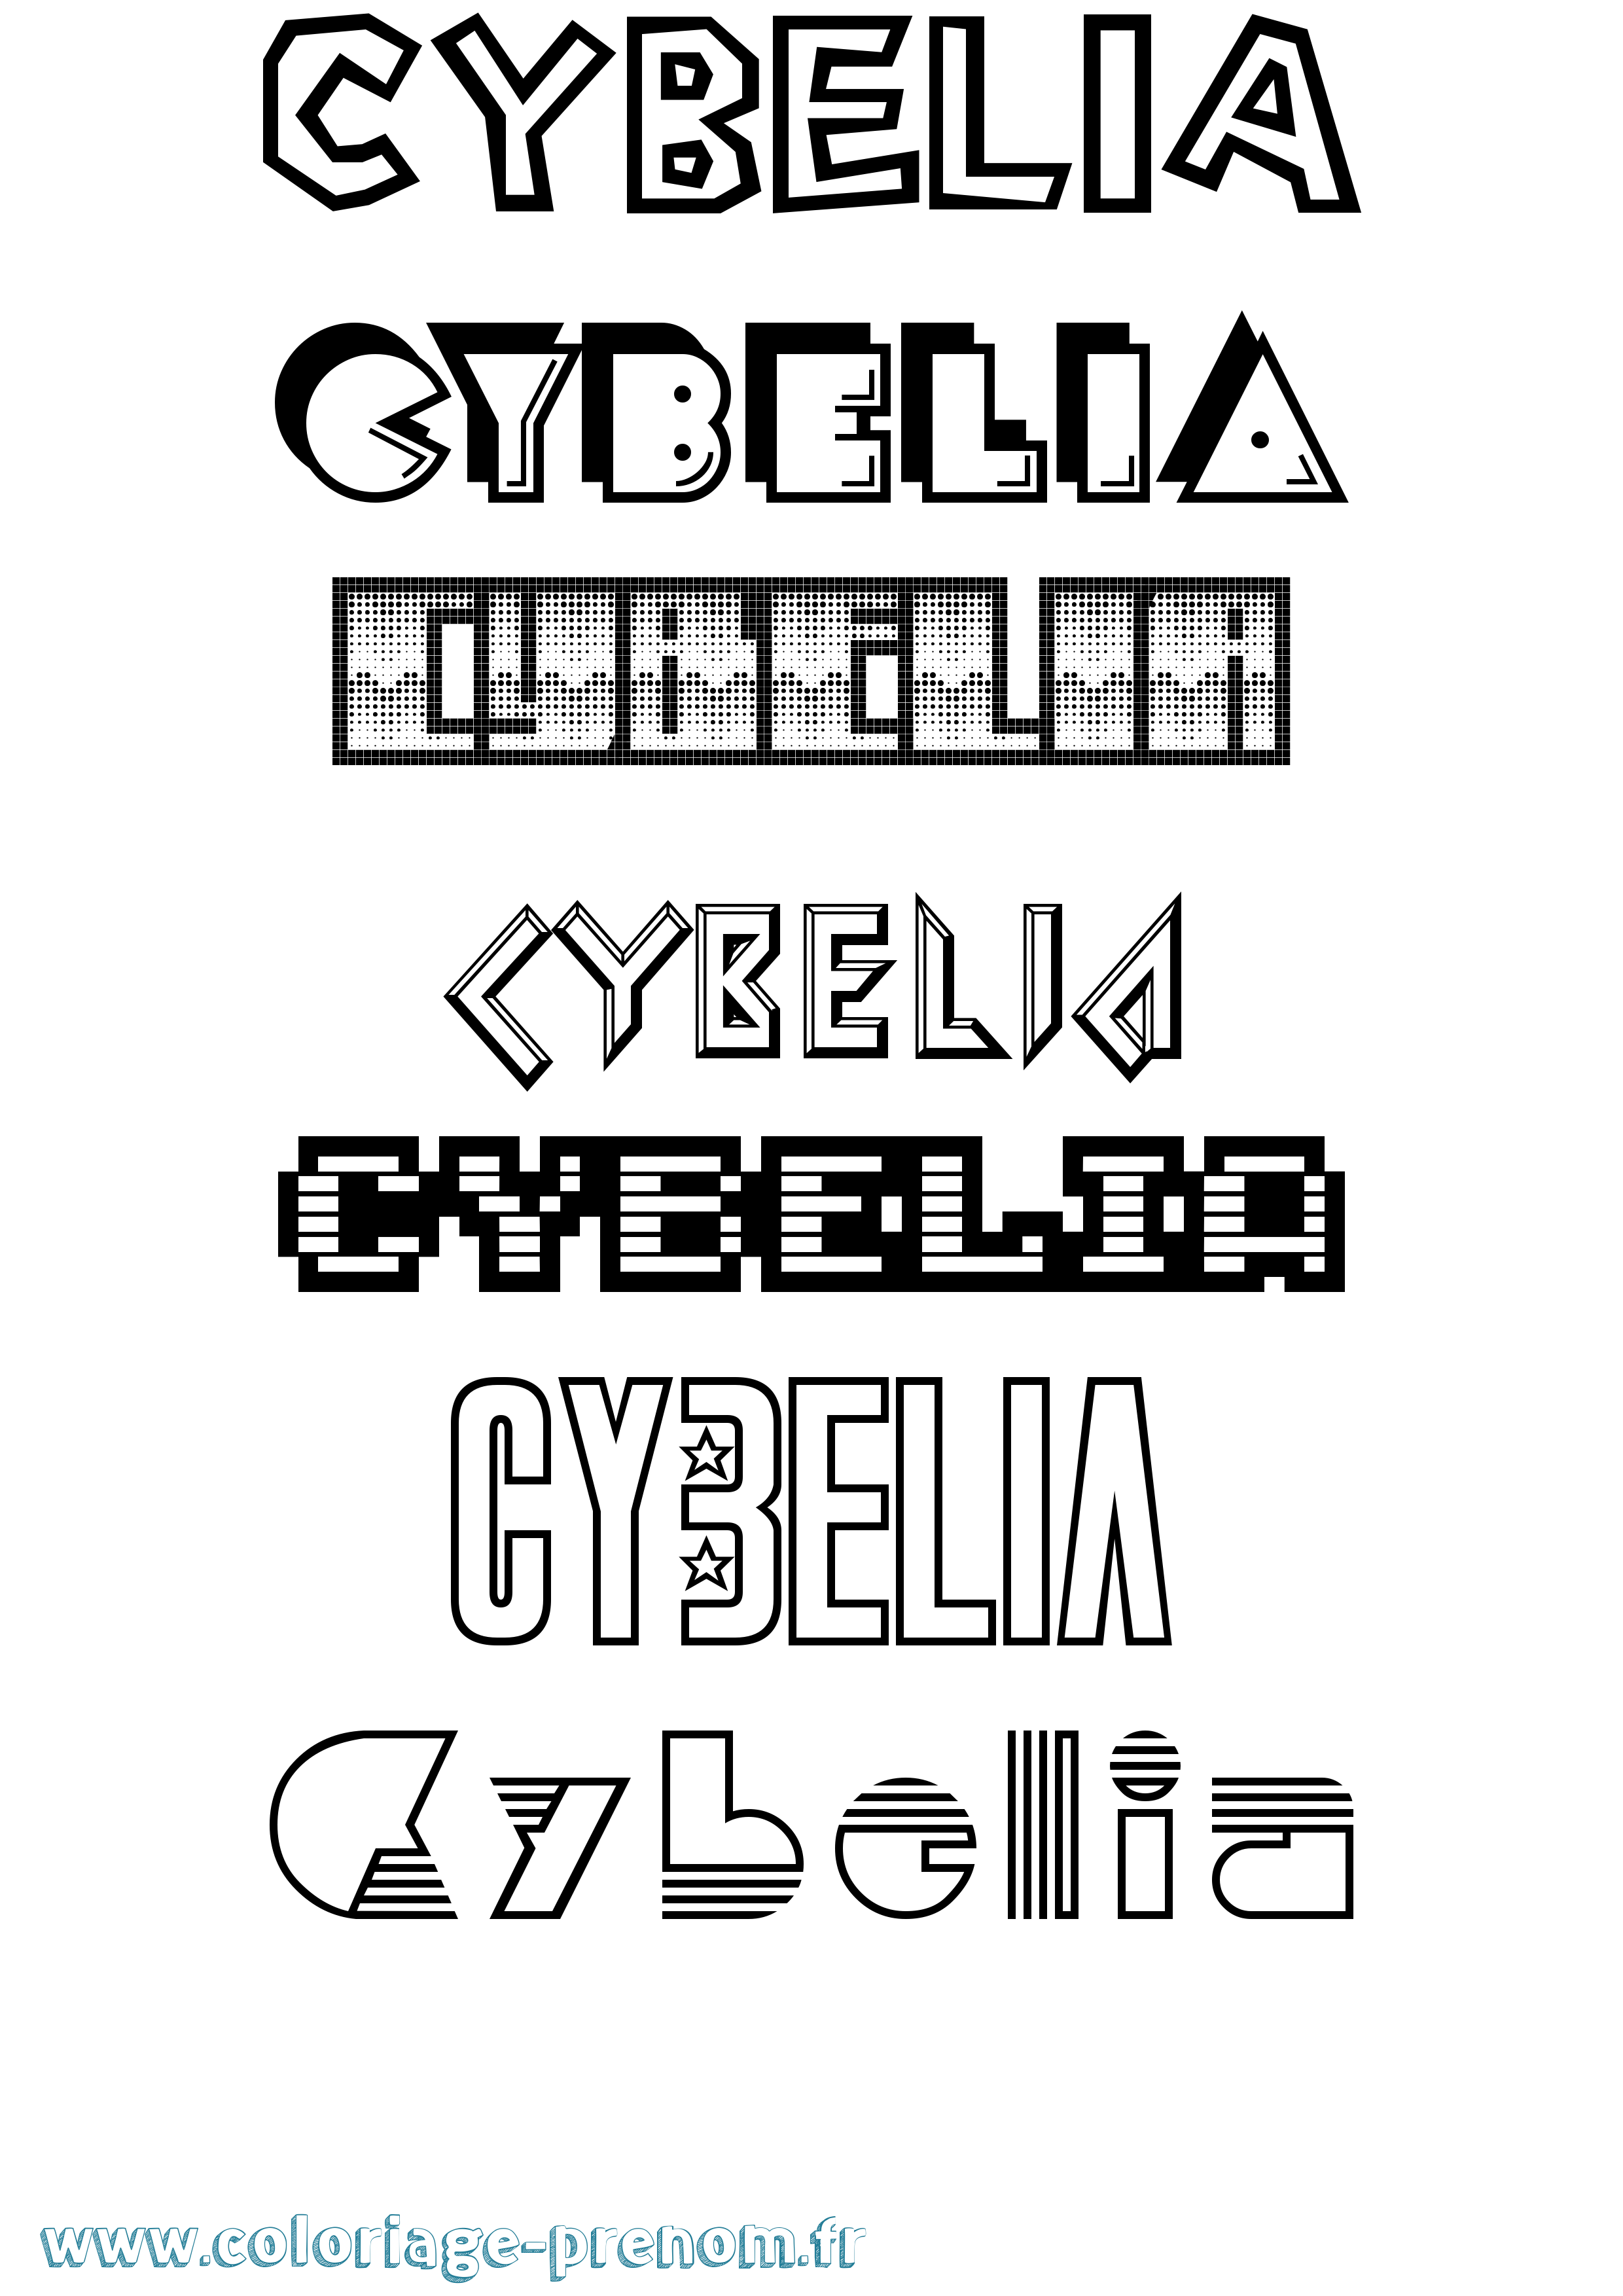 Coloriage prénom Cybelia Jeux Vidéos